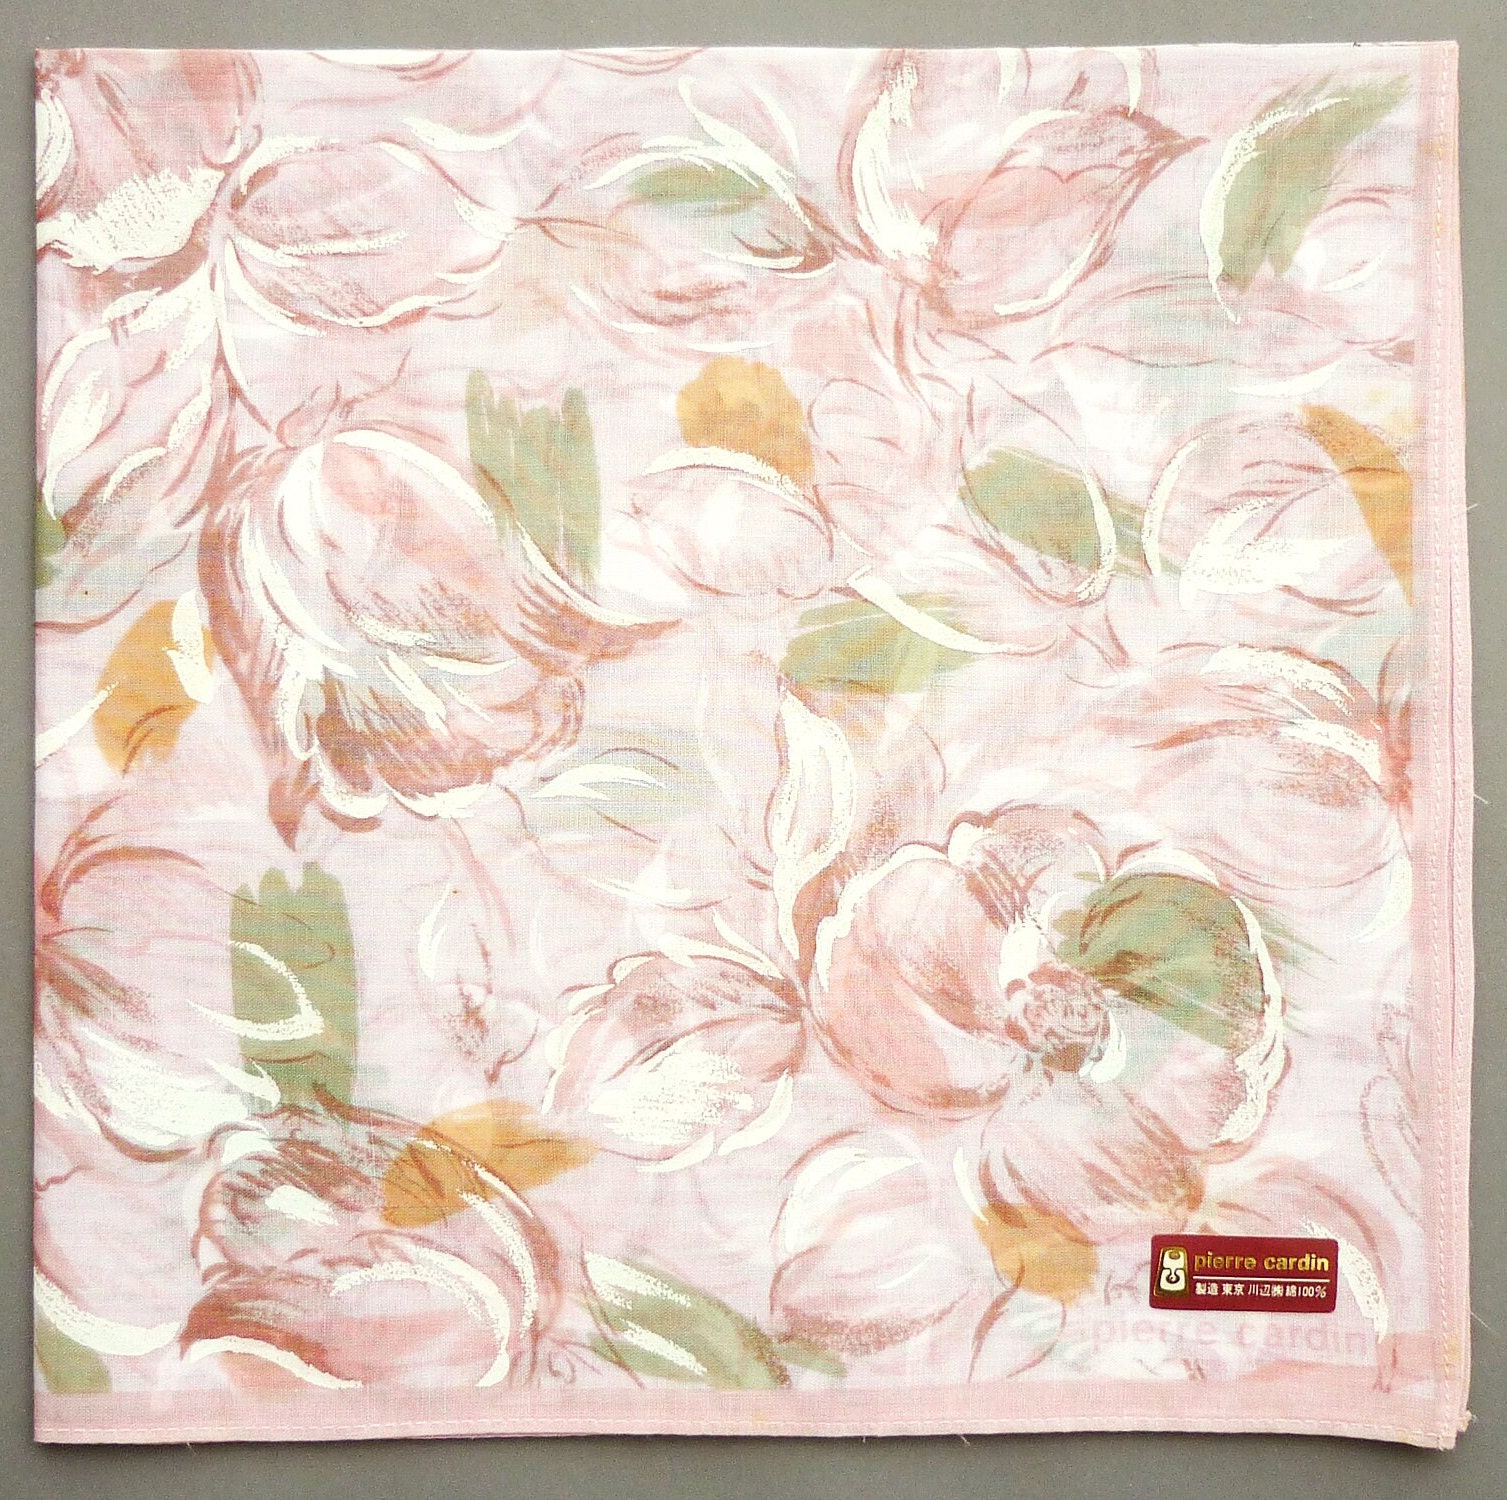 Pierre Cardin Vintage Taschentuch Floral Frauen 40 X cm I Kostenlose Lieferung Auf Bestellung 35 Usd Kauft Einfach Mehrere Artikel Zusammen in Der von OrangeSodaPanda